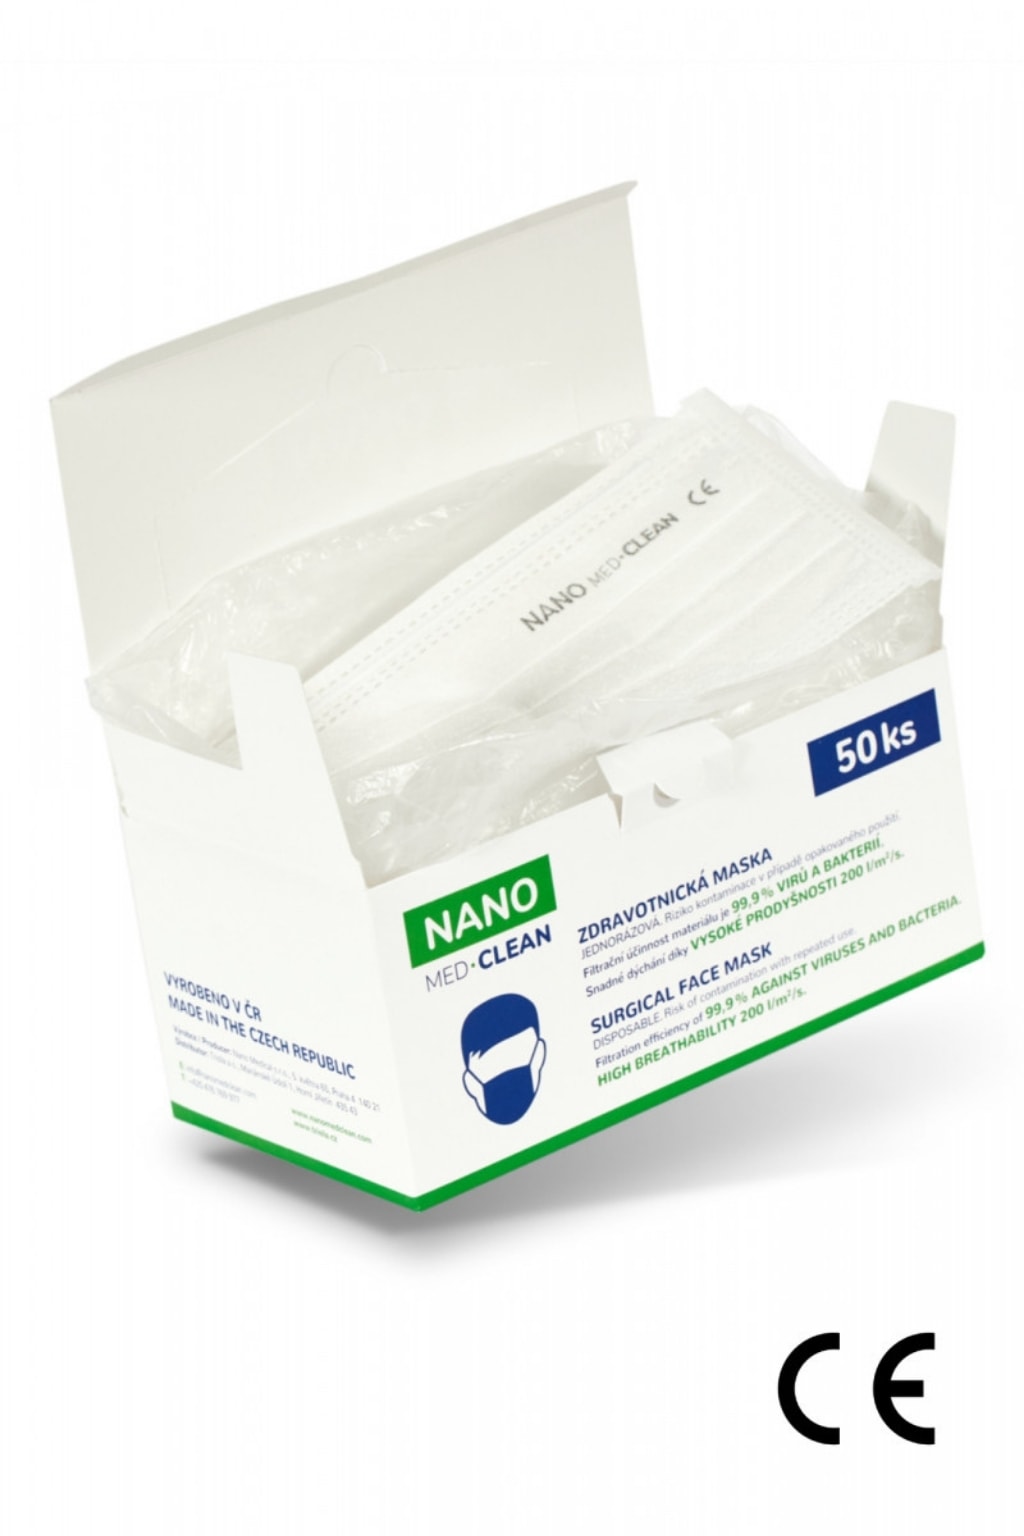 Levně NANO MEDICAL Nanovlákenné roušky Nano Med.Clean 50 ks 23,98 Kč / ks / viditelné označení nano